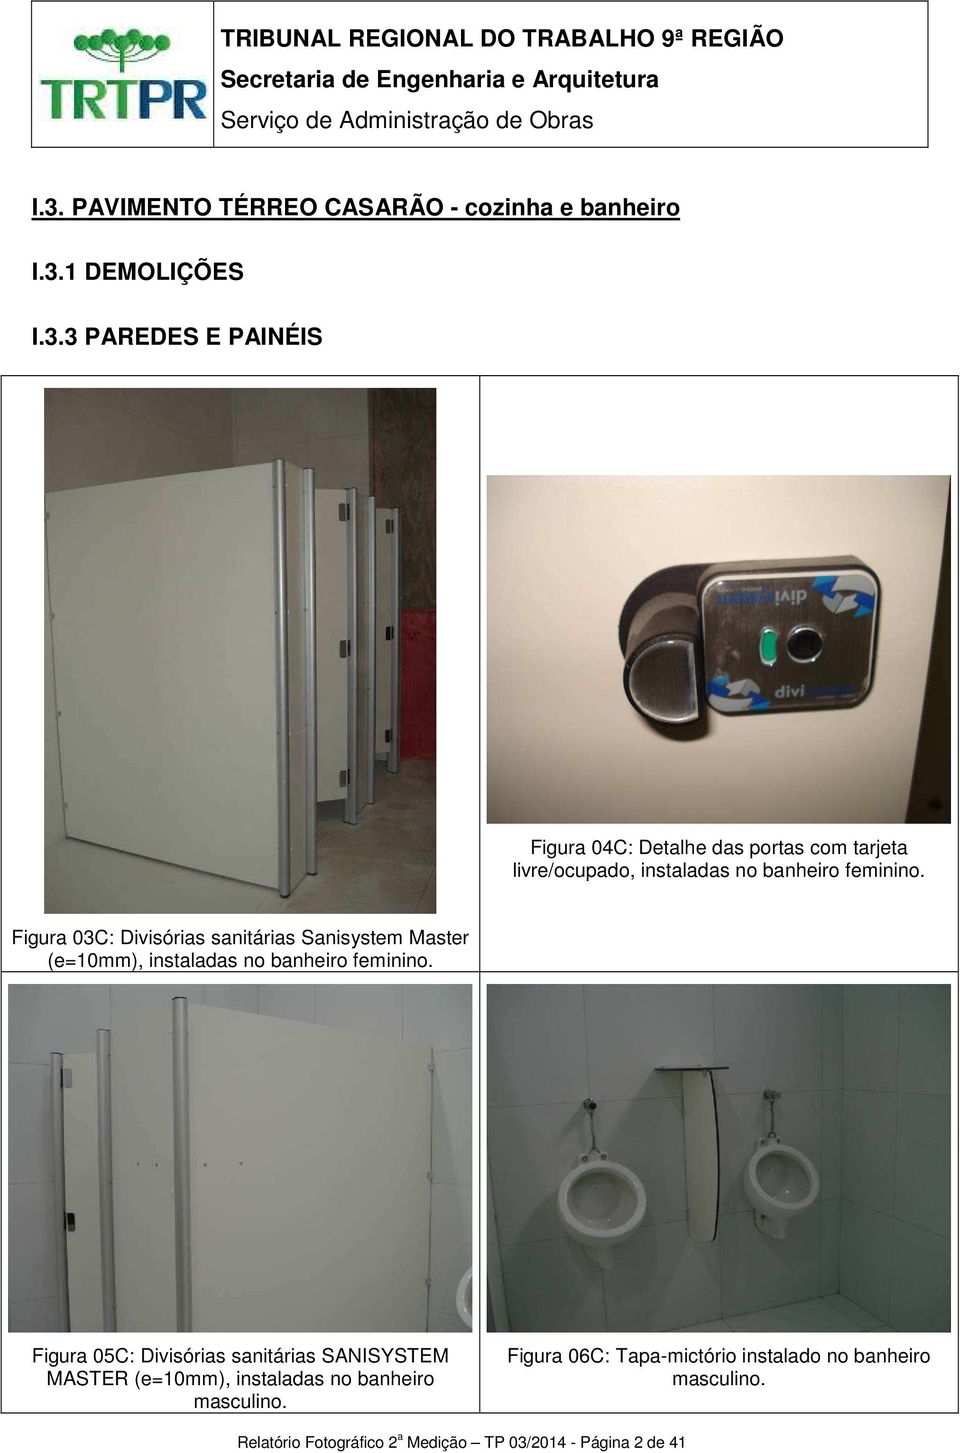 Figura 05C: Divisórias sanitárias SANISYSTEM MASTER (e=10mm), instaladas no banheiro masculino.